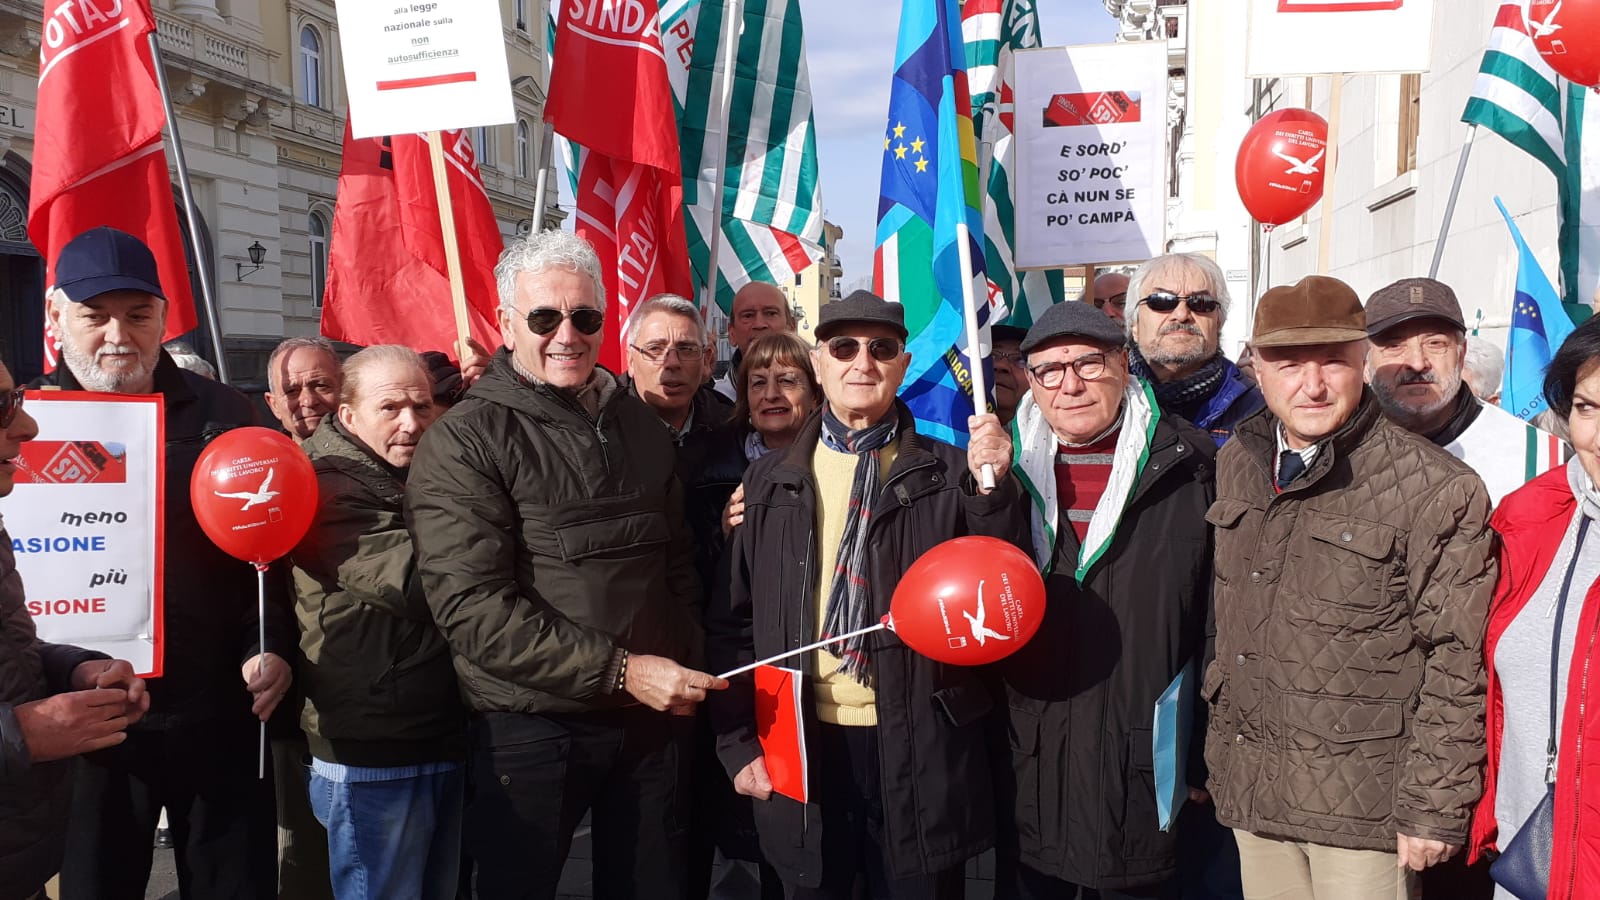 Benevento| Non autosufficienza pensionati, sindacati in piazza